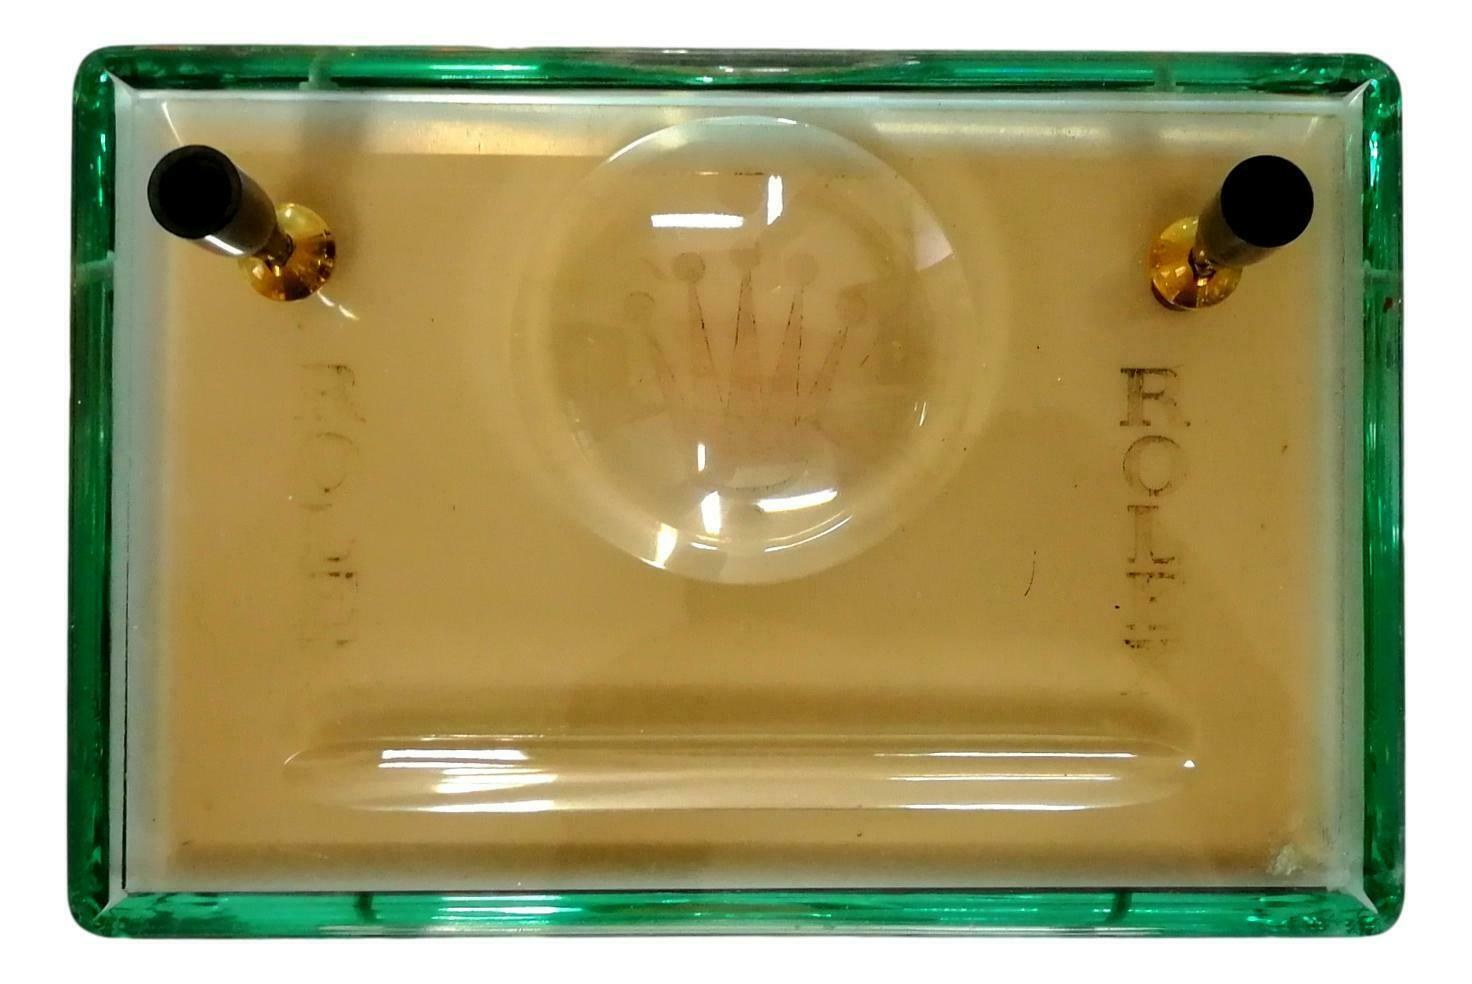 Rarissime porte-stylos de bureau complet des années 1960, production Fontana Arte pour Rolex, composé d'un épais verre bicolore, base ambre et vert Nil, avec double gravure interne du logo Rolex et grande couronne centrale.

provenant d'une